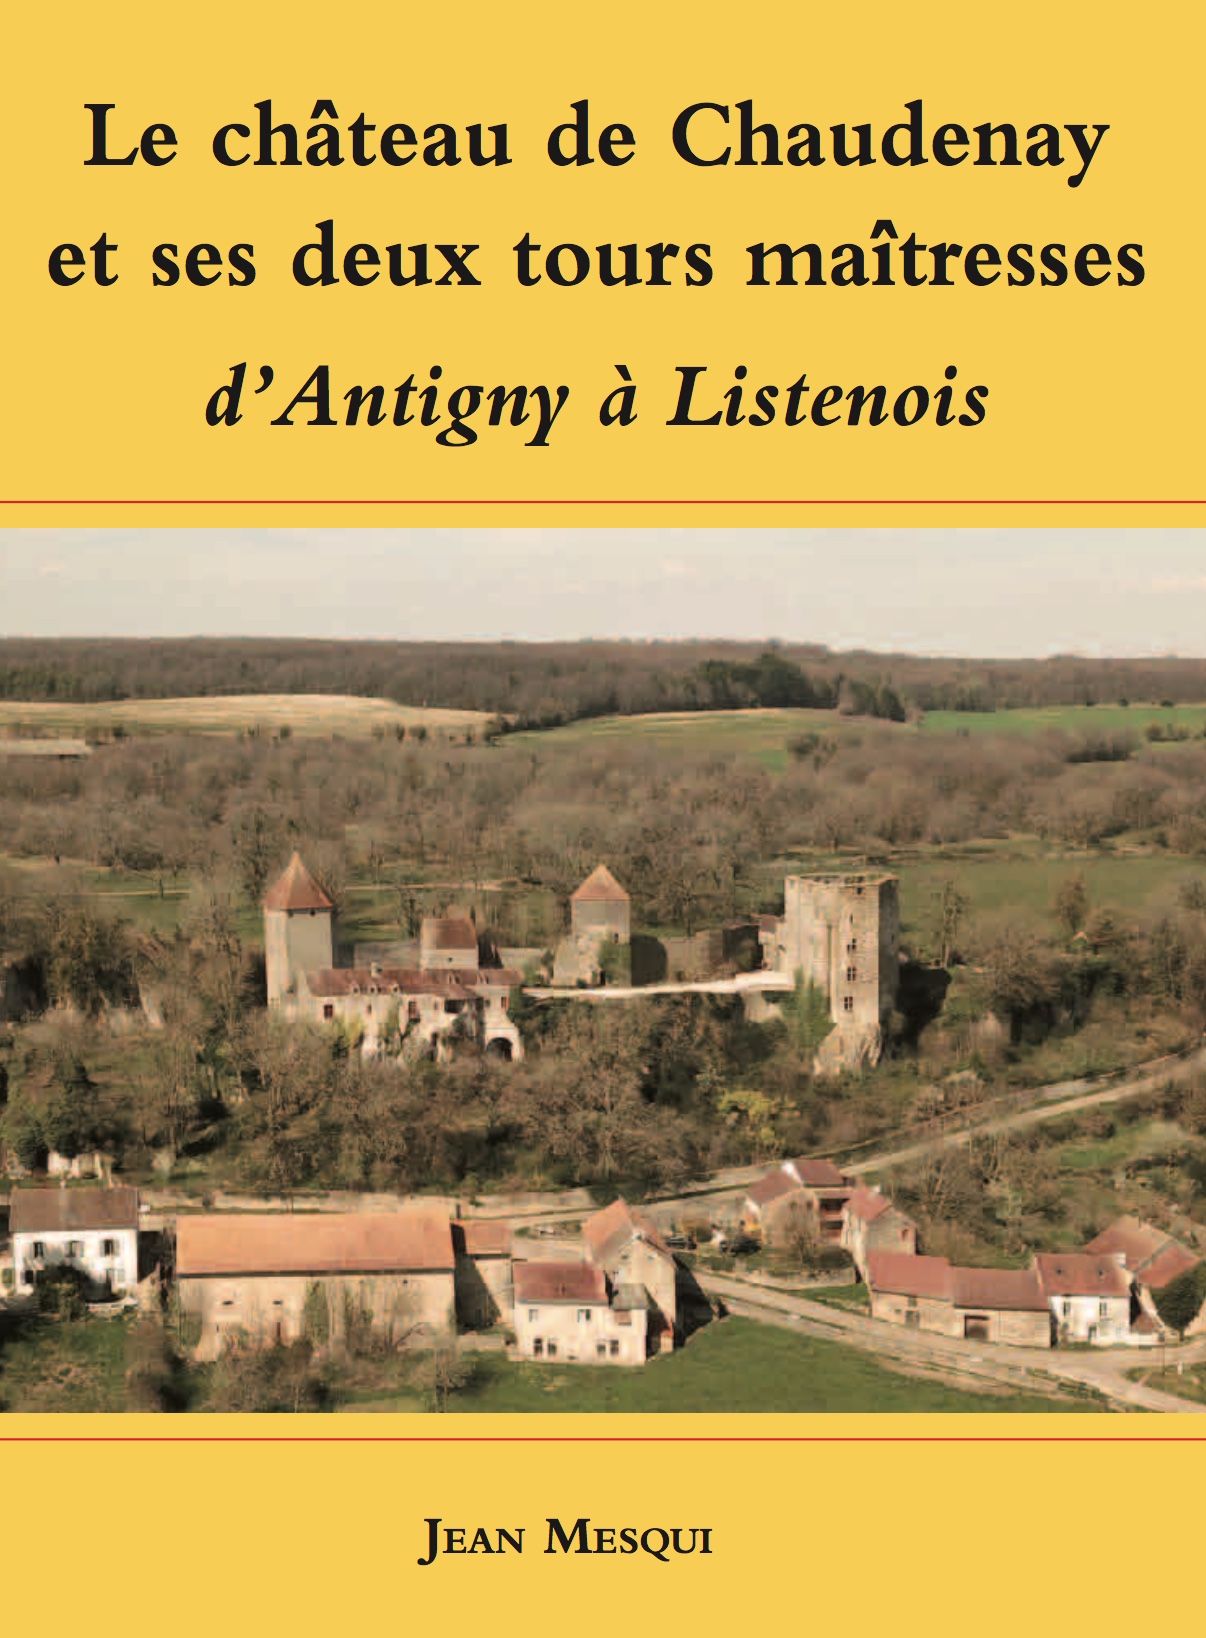 Le château de Chaudenay (Côte-d'Or) et ses deux tours maîtresses : d'Antigny à Listenois, 2020, 64 p., 60 ill.